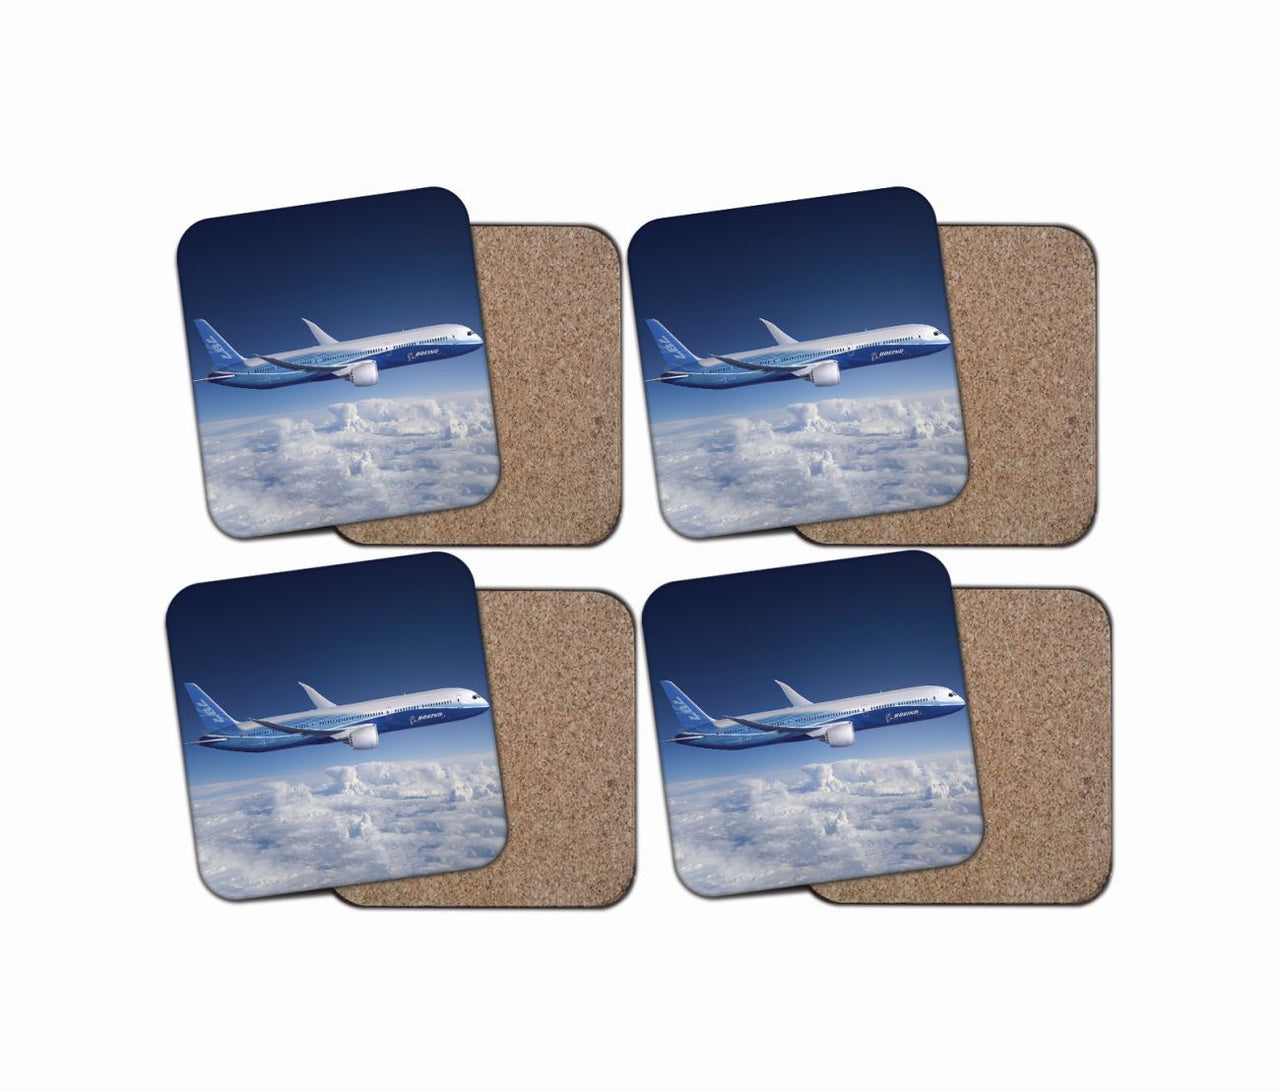 Boeing 787 Dreamliner Designed Coasters